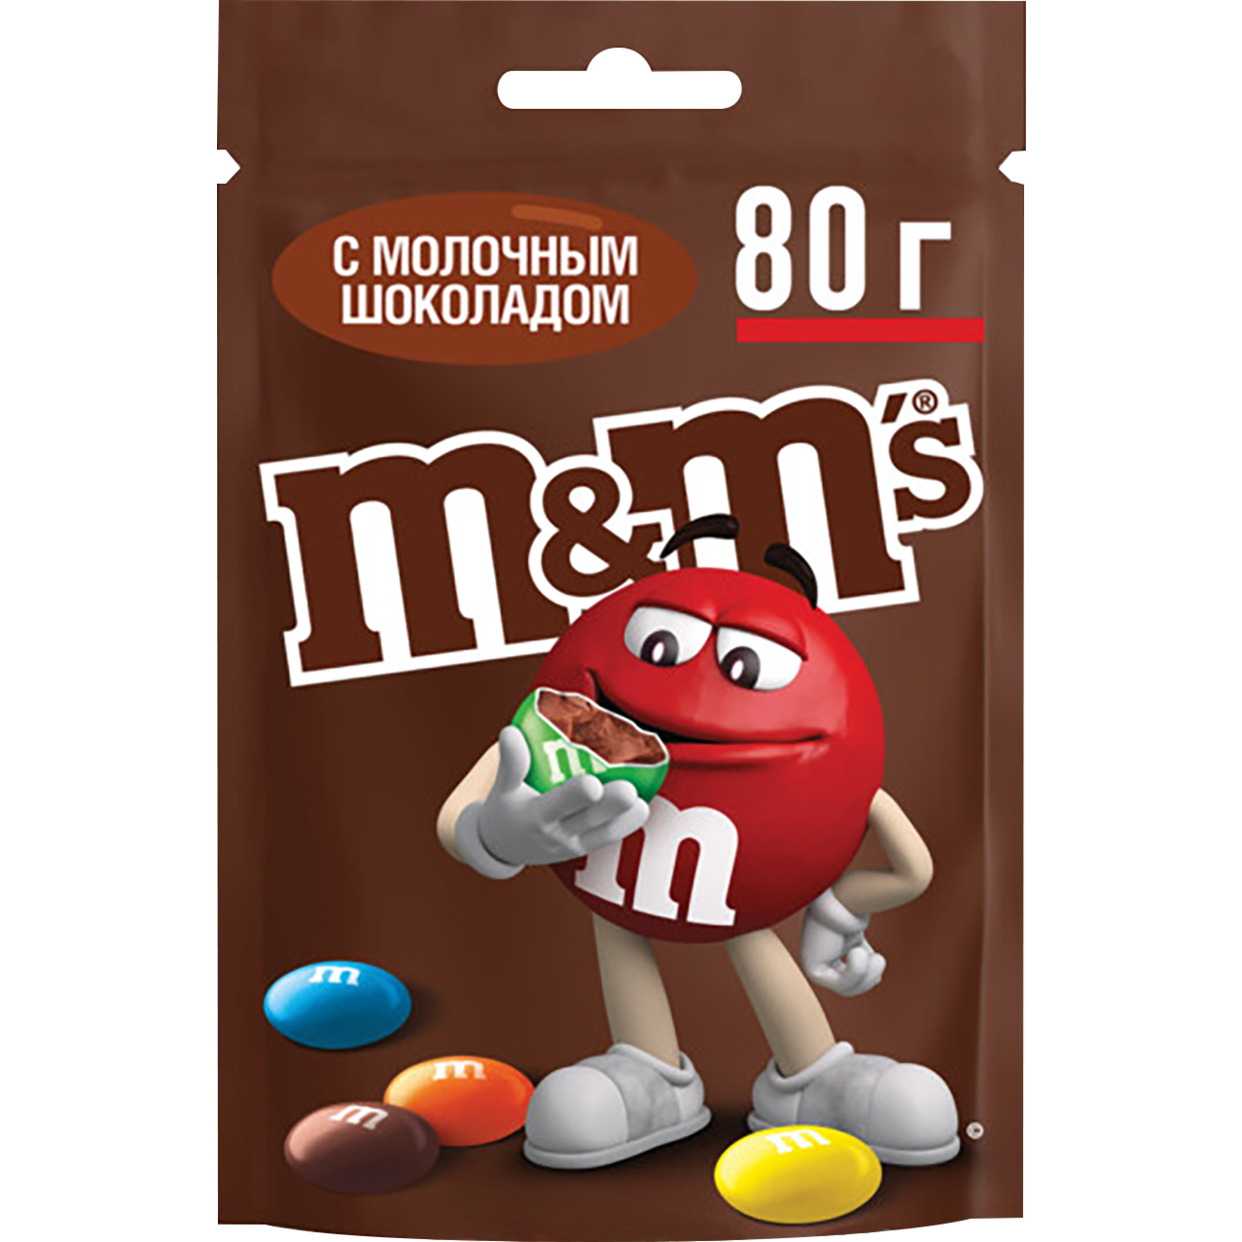 Драже M&M’s с молочным шоколадом, покрытое хрустящей разноцветной глазурью, 80г